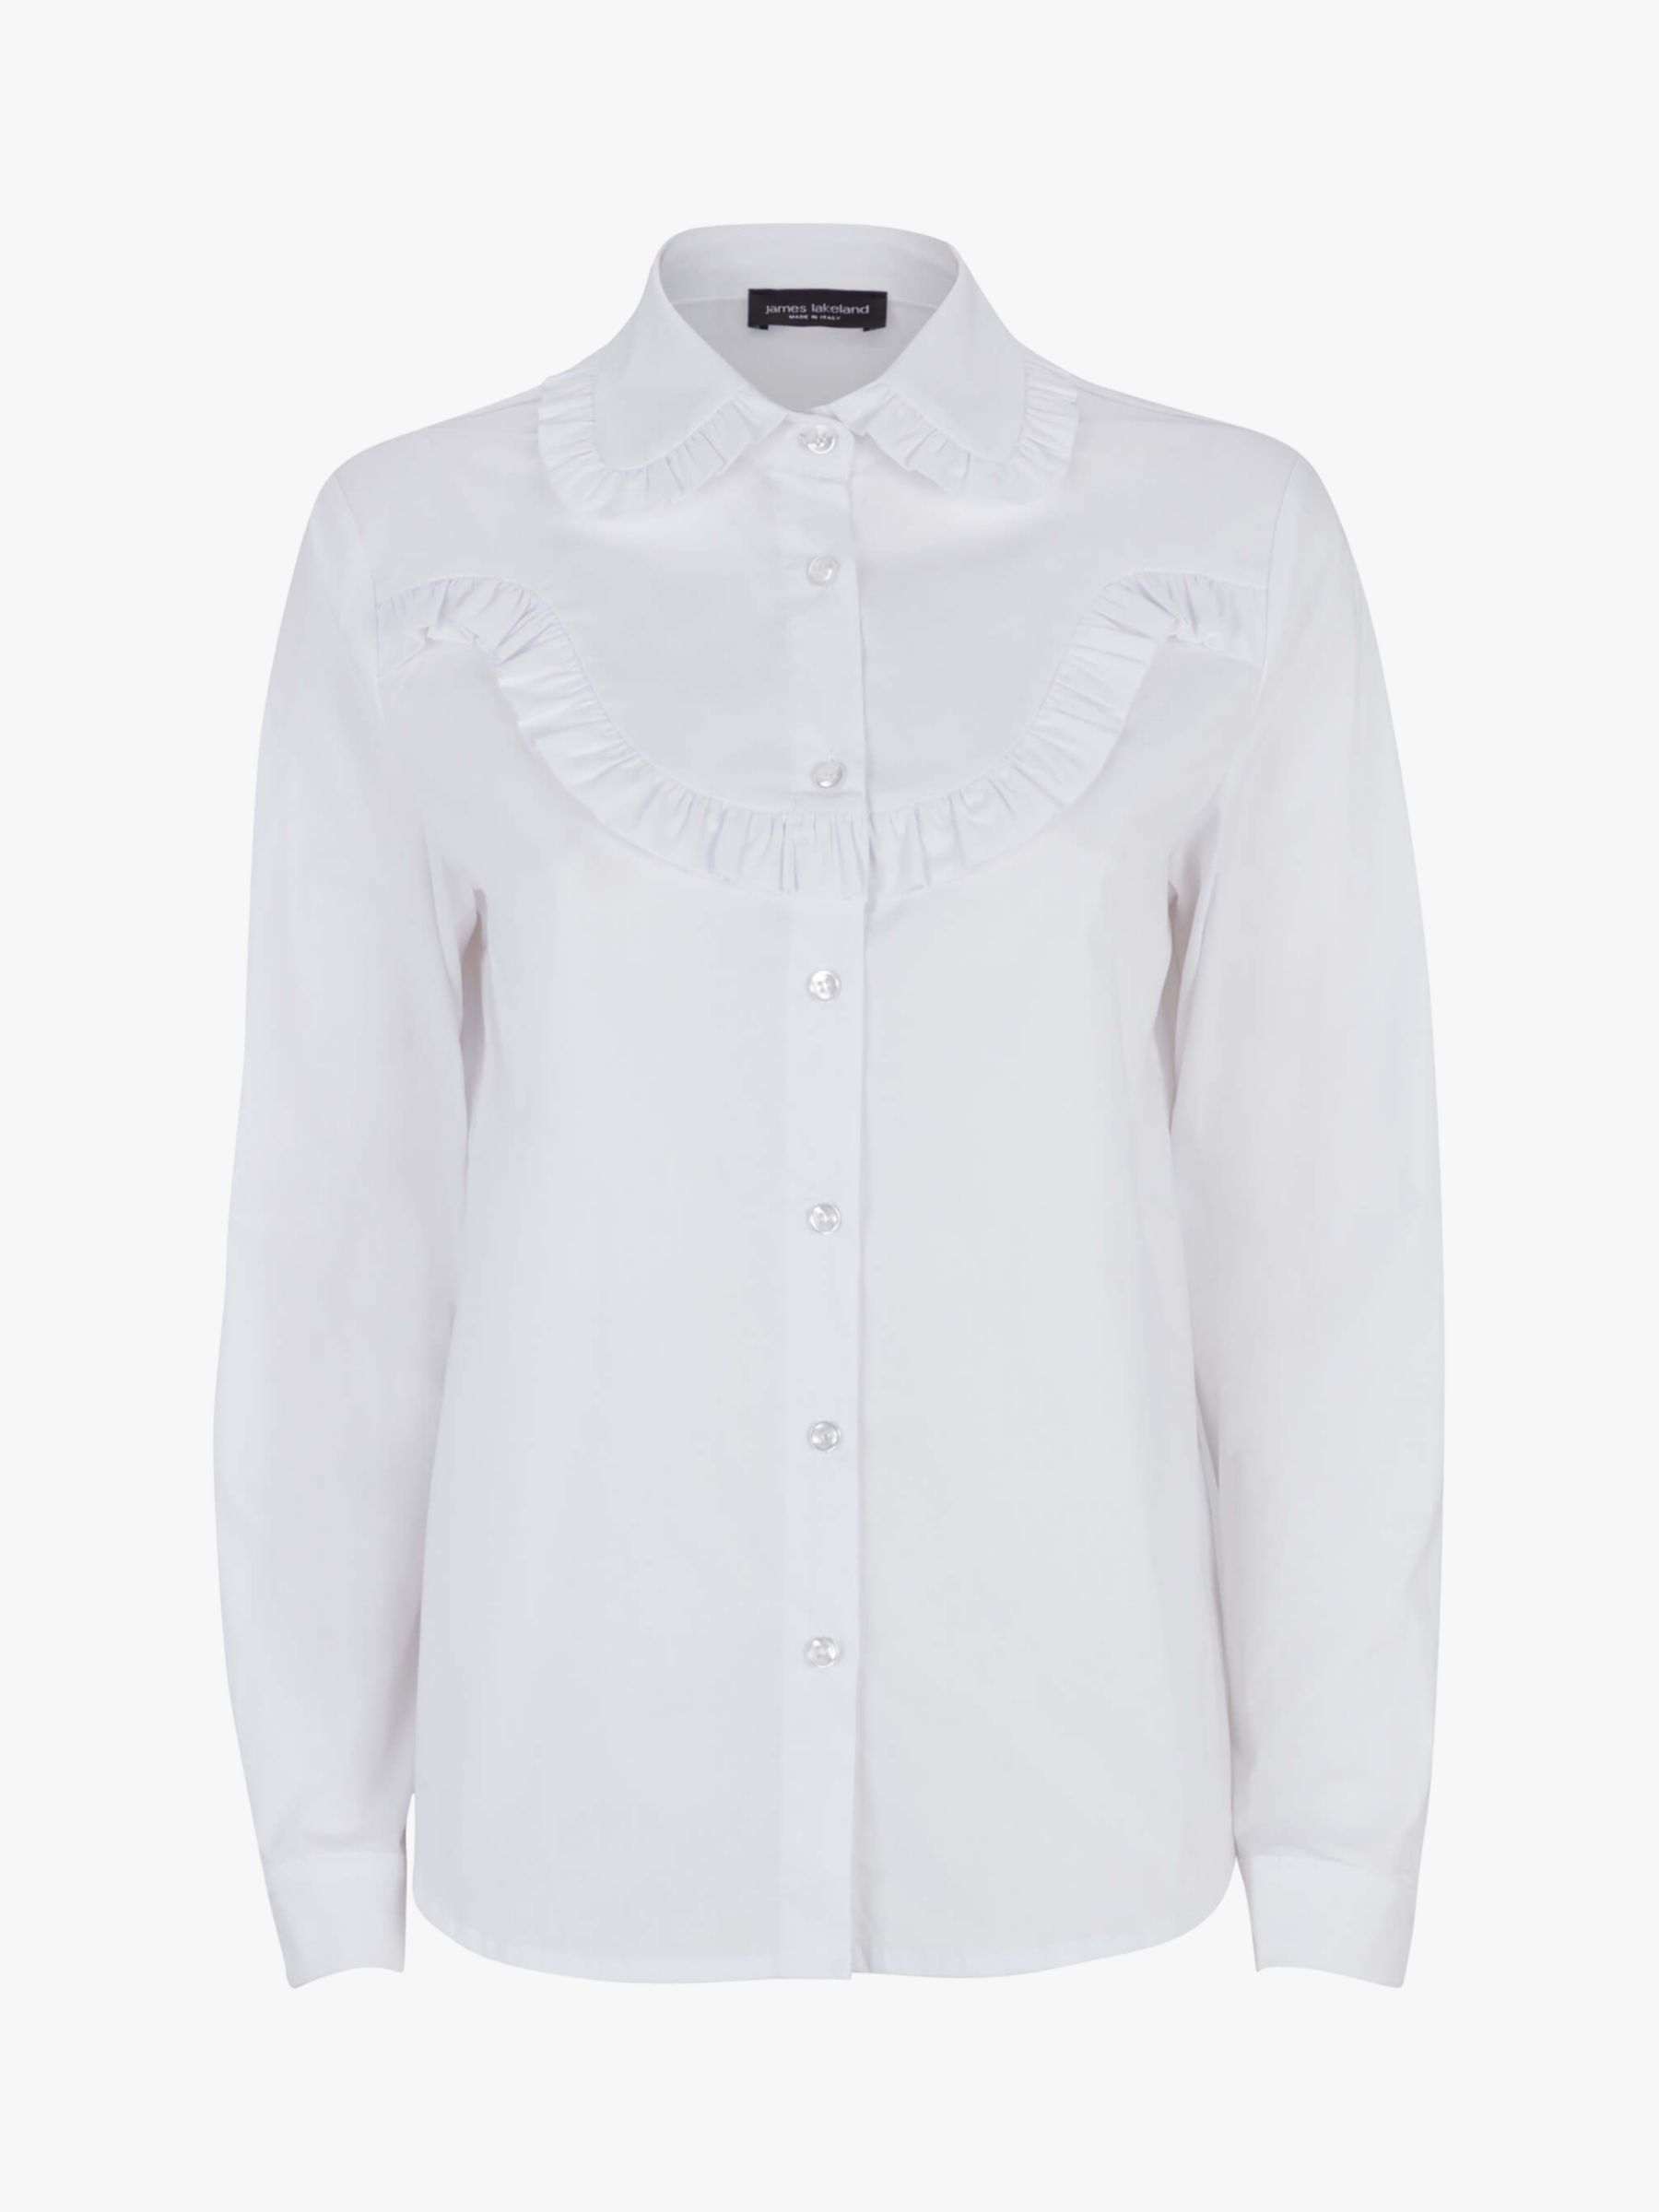 James Lakeland Poplin Ruffle Shirt, White at John Lewis & Partners